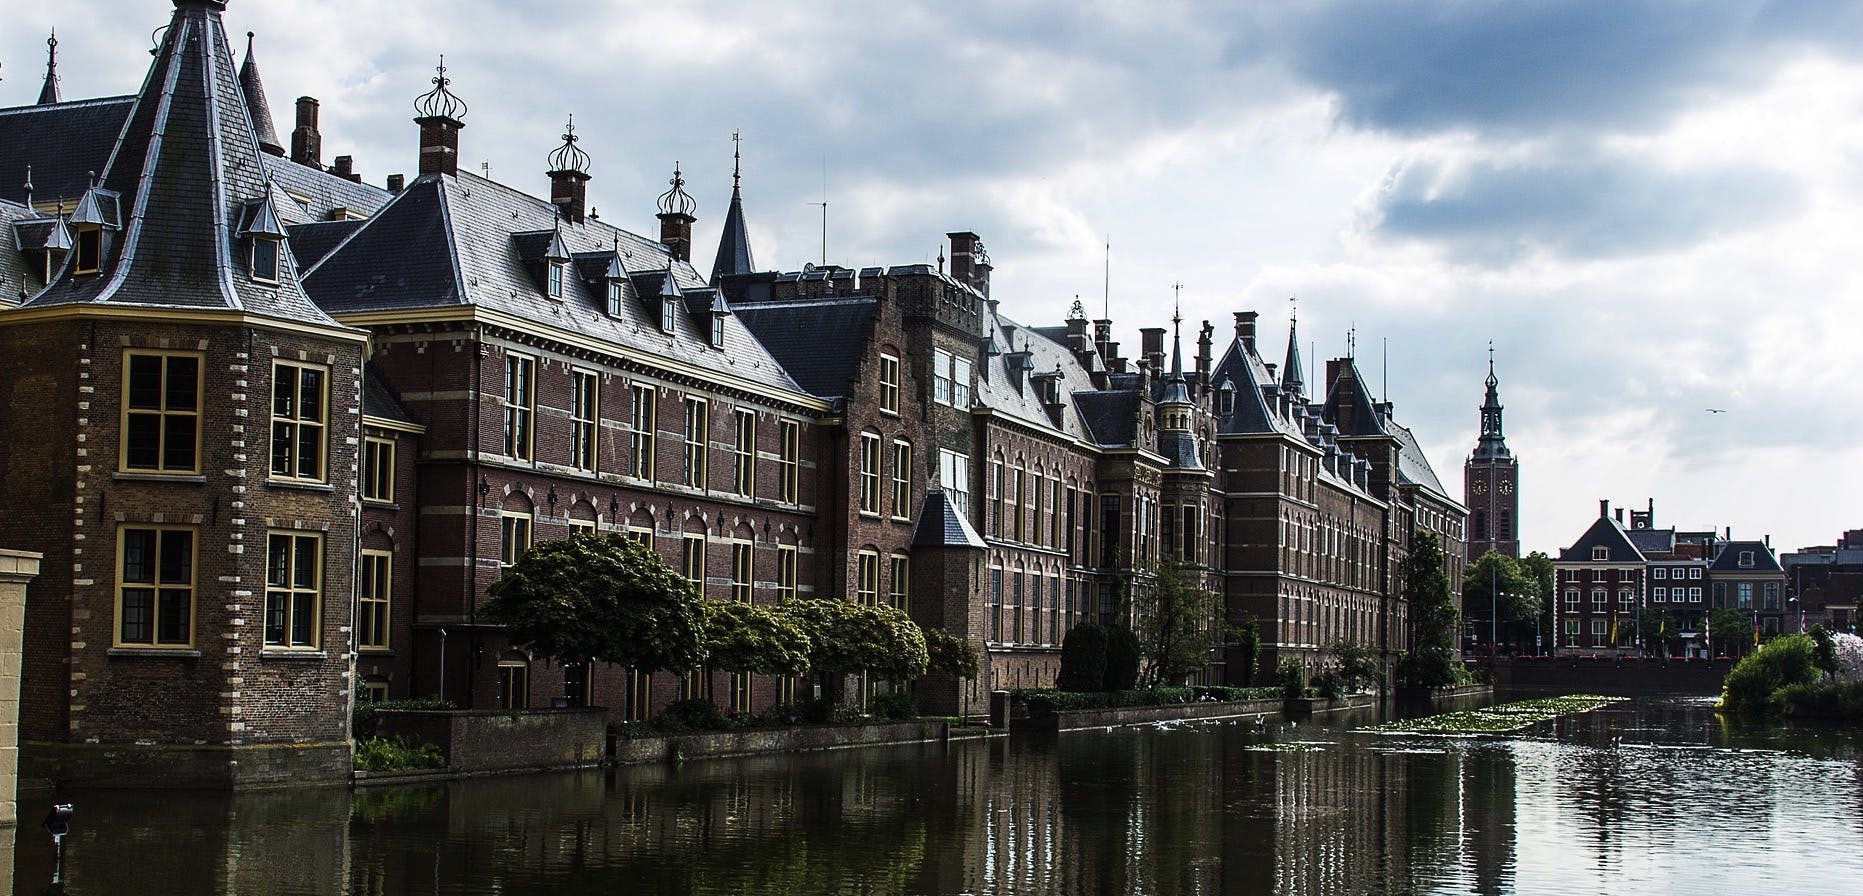 Visita turística a La Haya y Delft con transporte privado